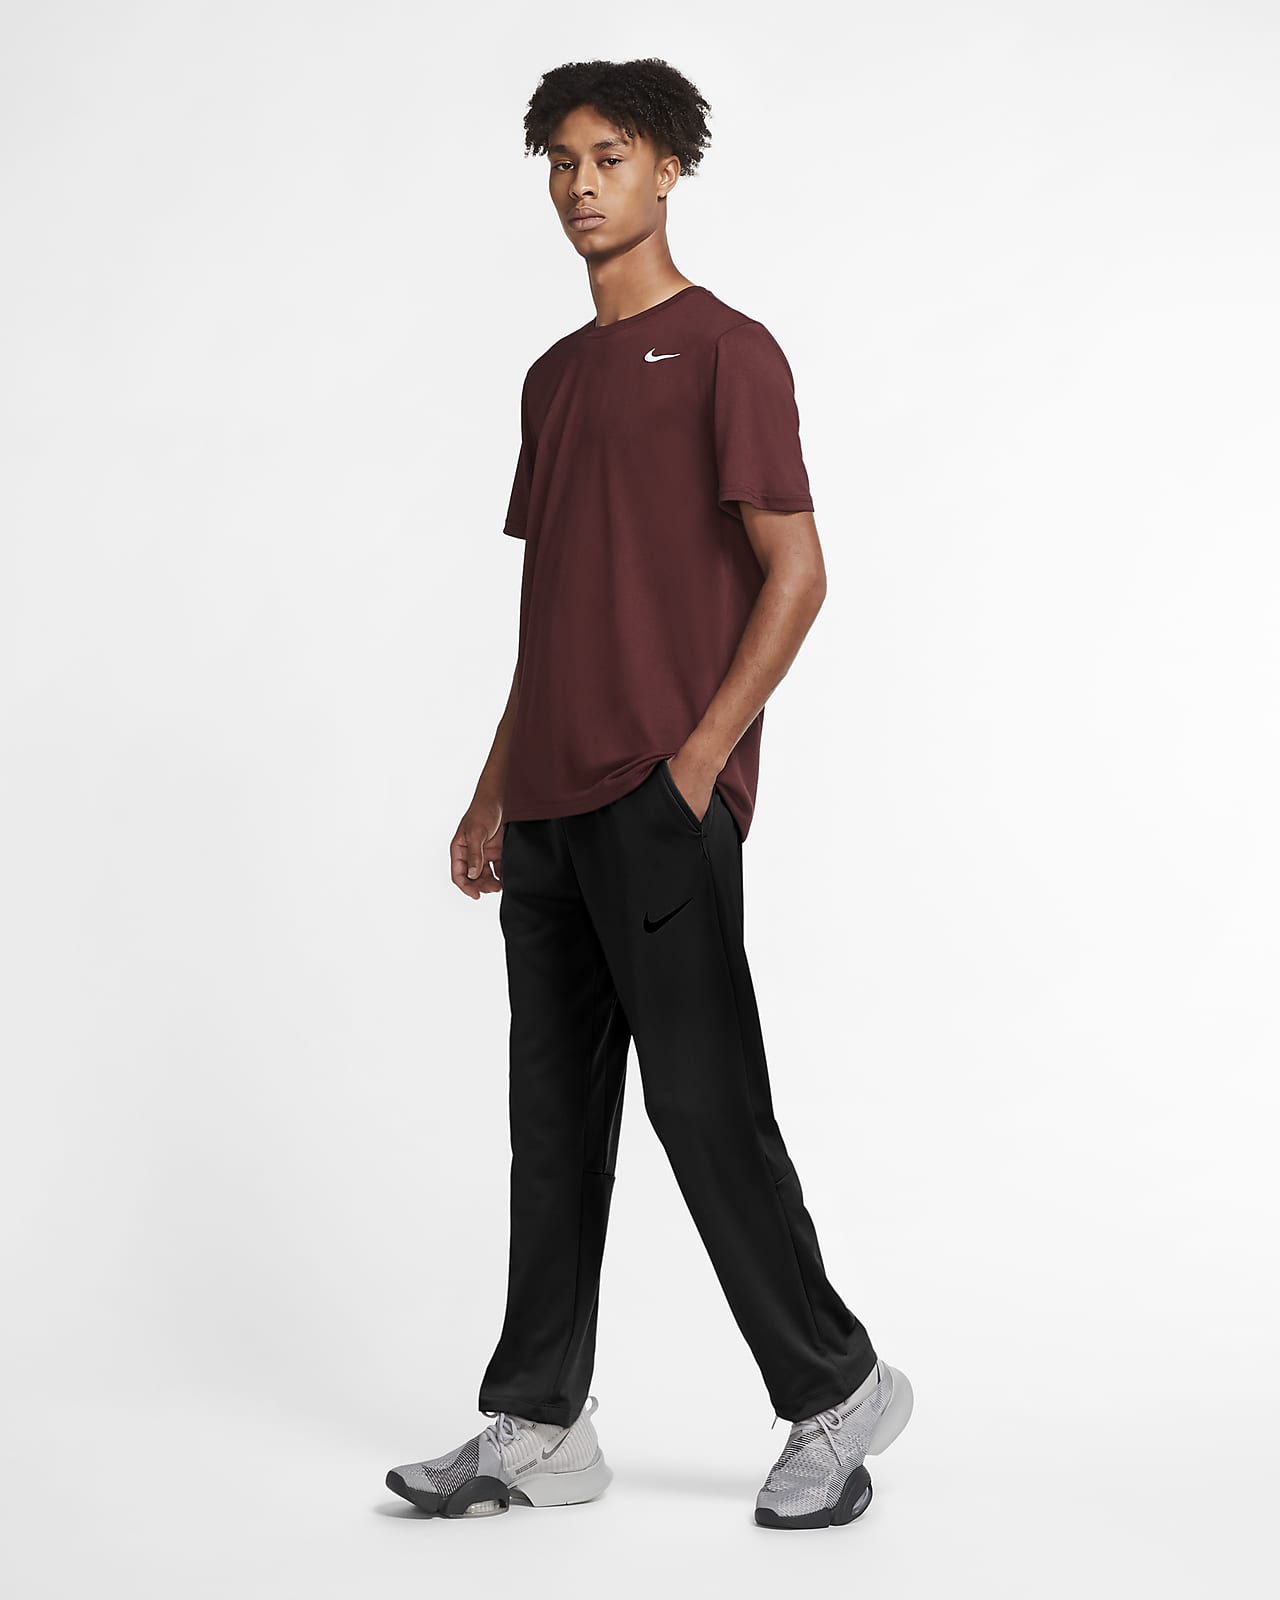 Men's Training Pants. Nike.com